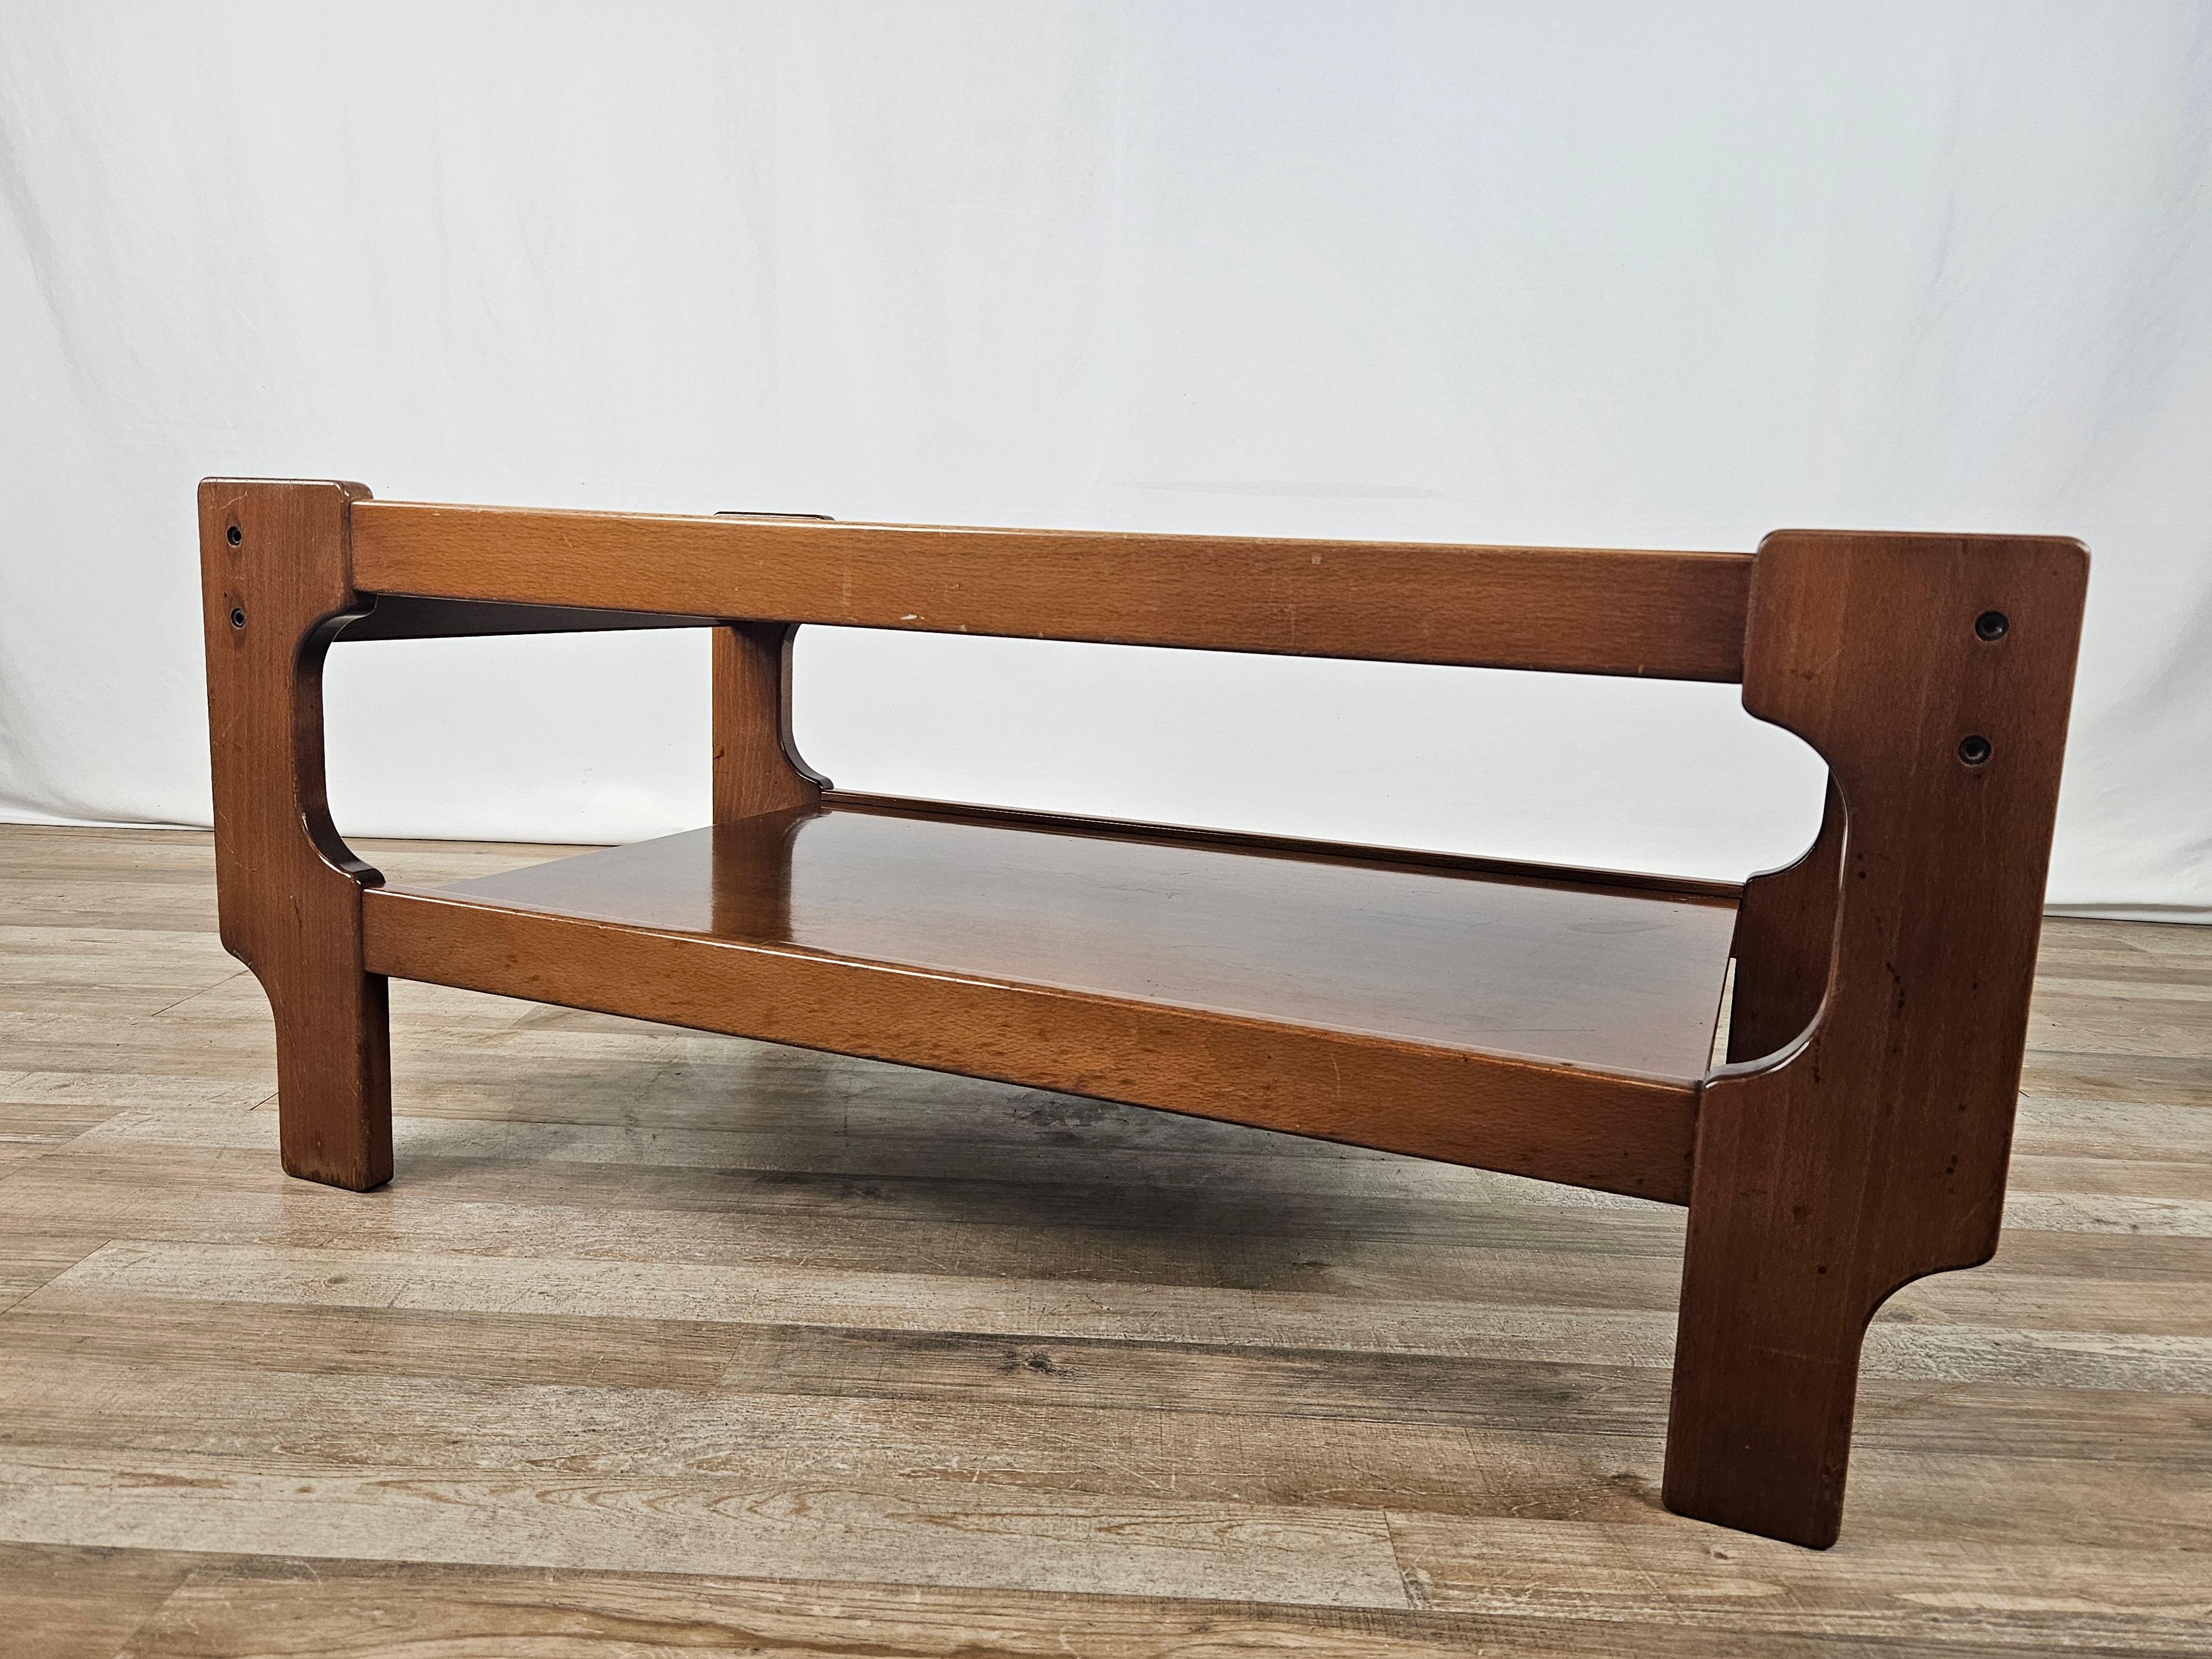 Couchtisch aus Teakholz mit zwei Einlegeböden, einem Hauptboden aus Rauchglas und einem aus Holz.

Ein ausgezeichnetes Möbelstück des italienischen Designs und Modernismus der 1970er Jahre.